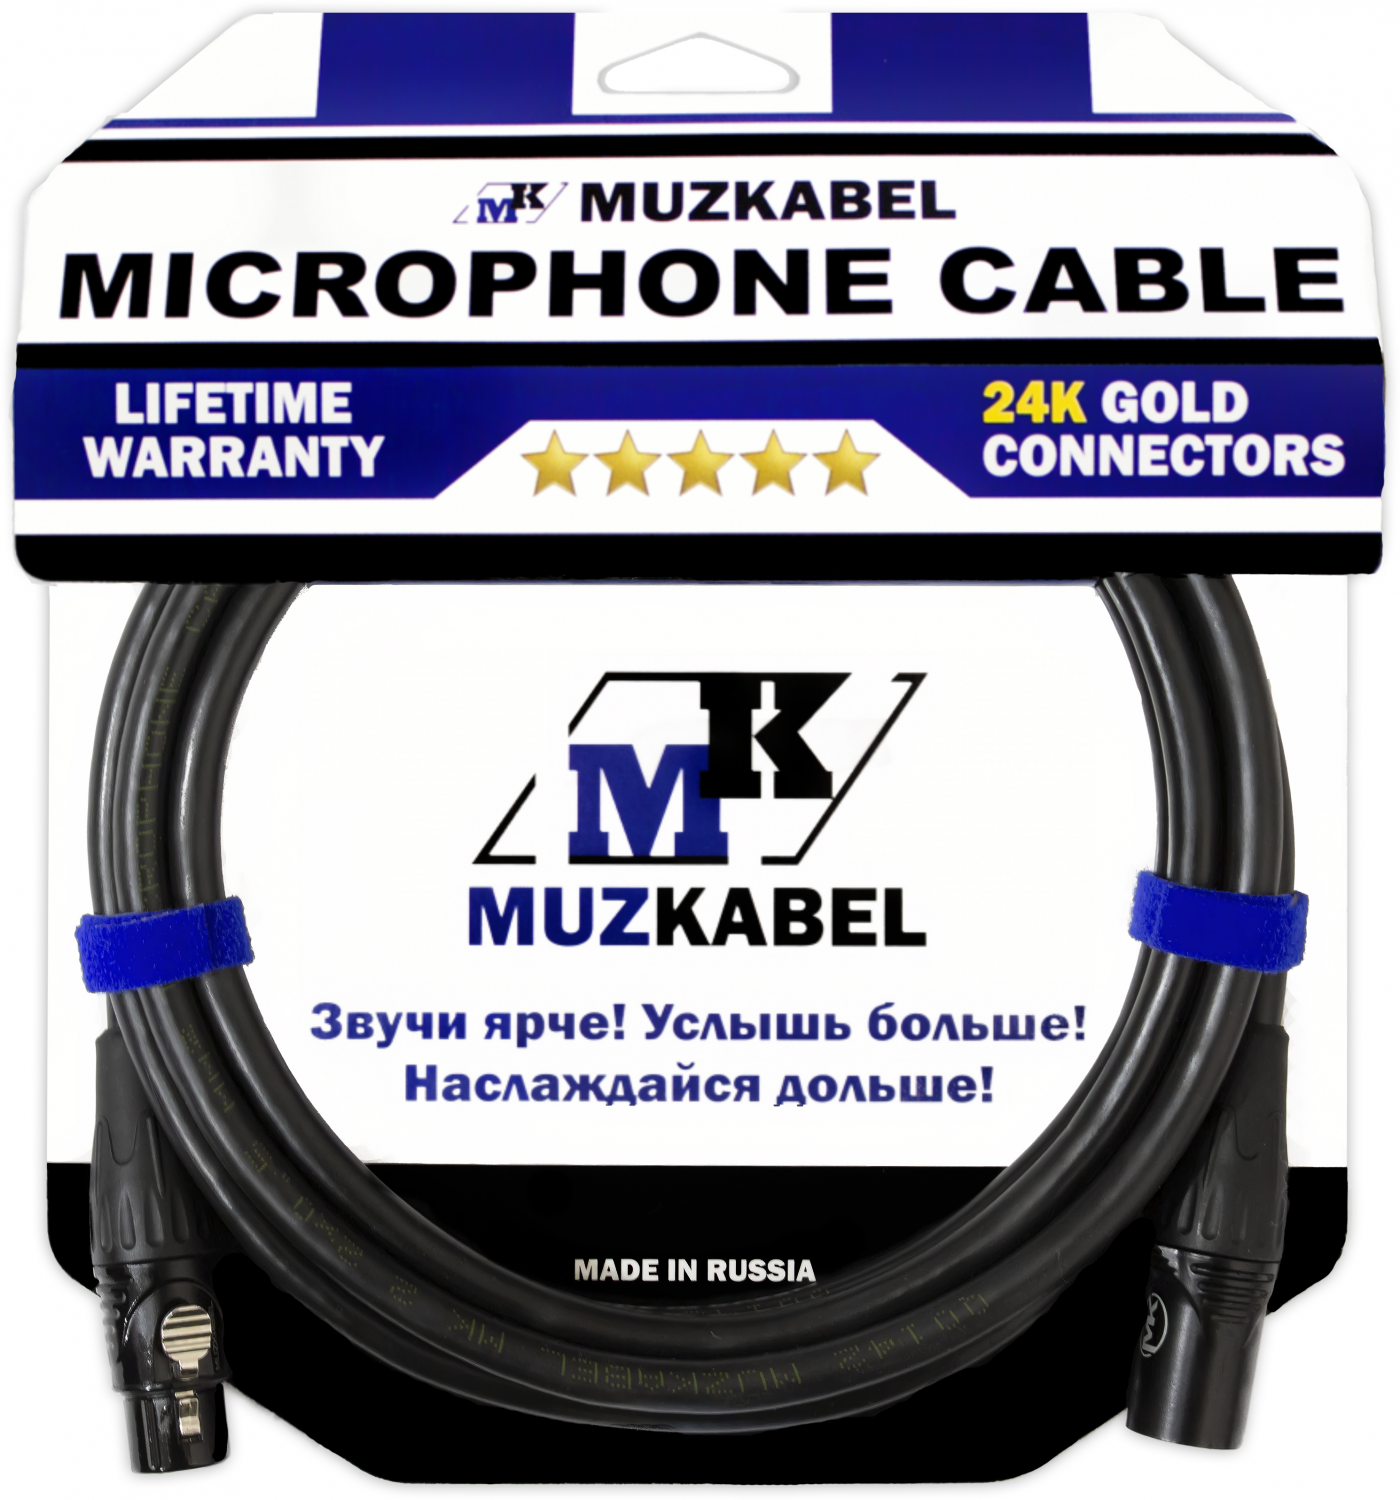 Микрофонный кабель MUZKABEL MBXMK2 - 8 метров, XLR - XLR